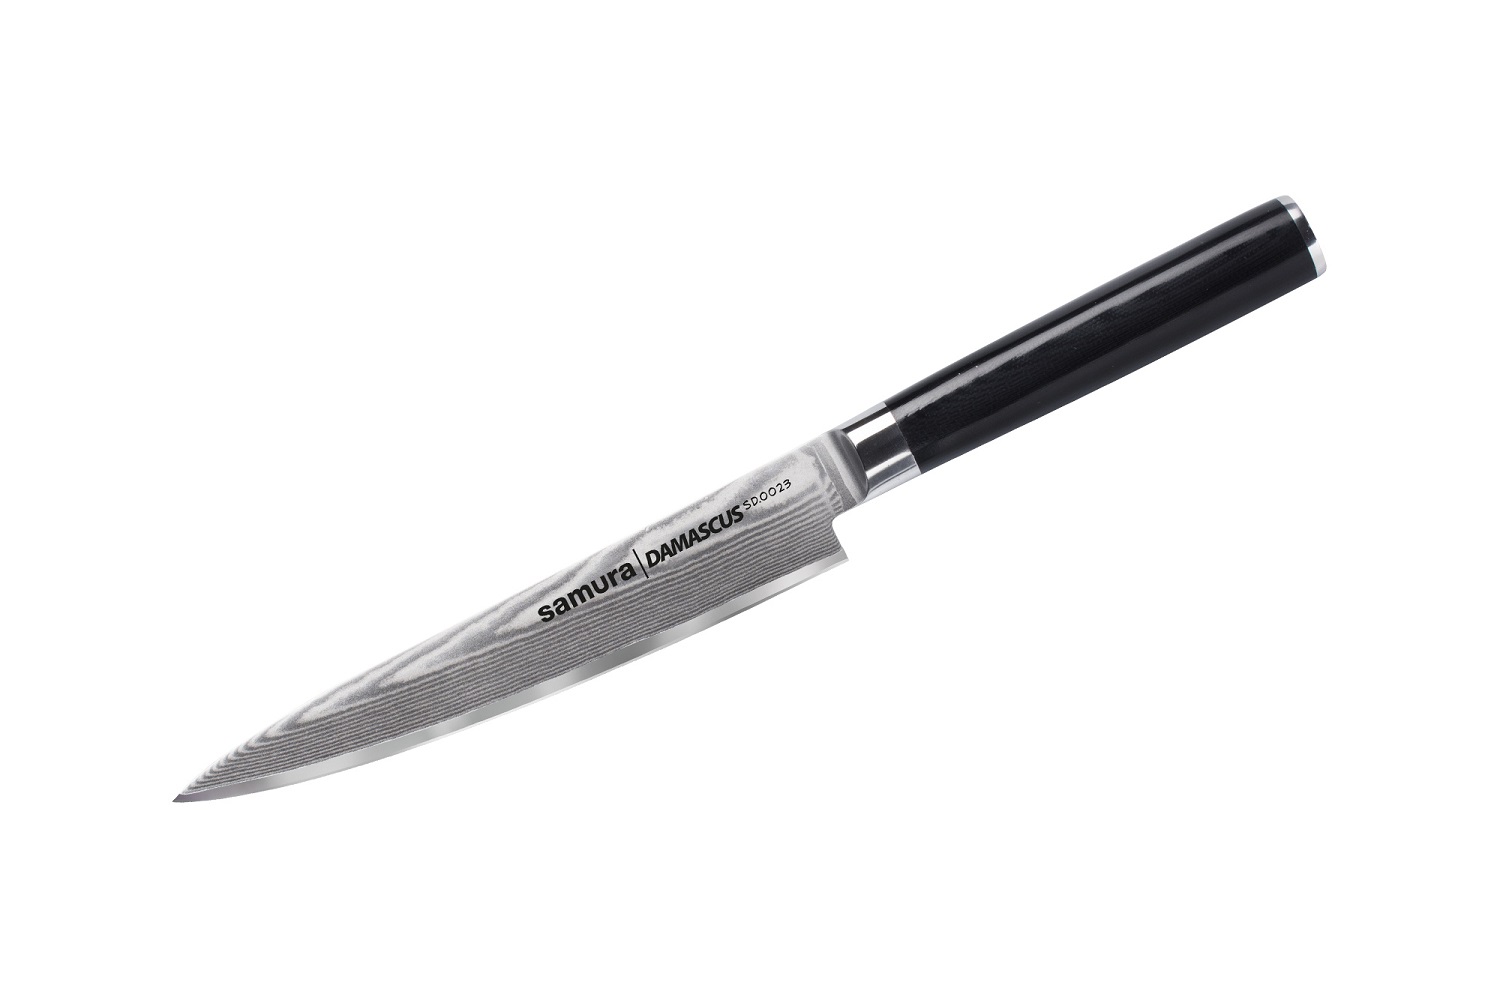 Нож Samura универсальный Damascus, 15 см, G-10, дамаск 67 слоев нож samura овощной damascus 9 см g 10 дамаск 67 слоев